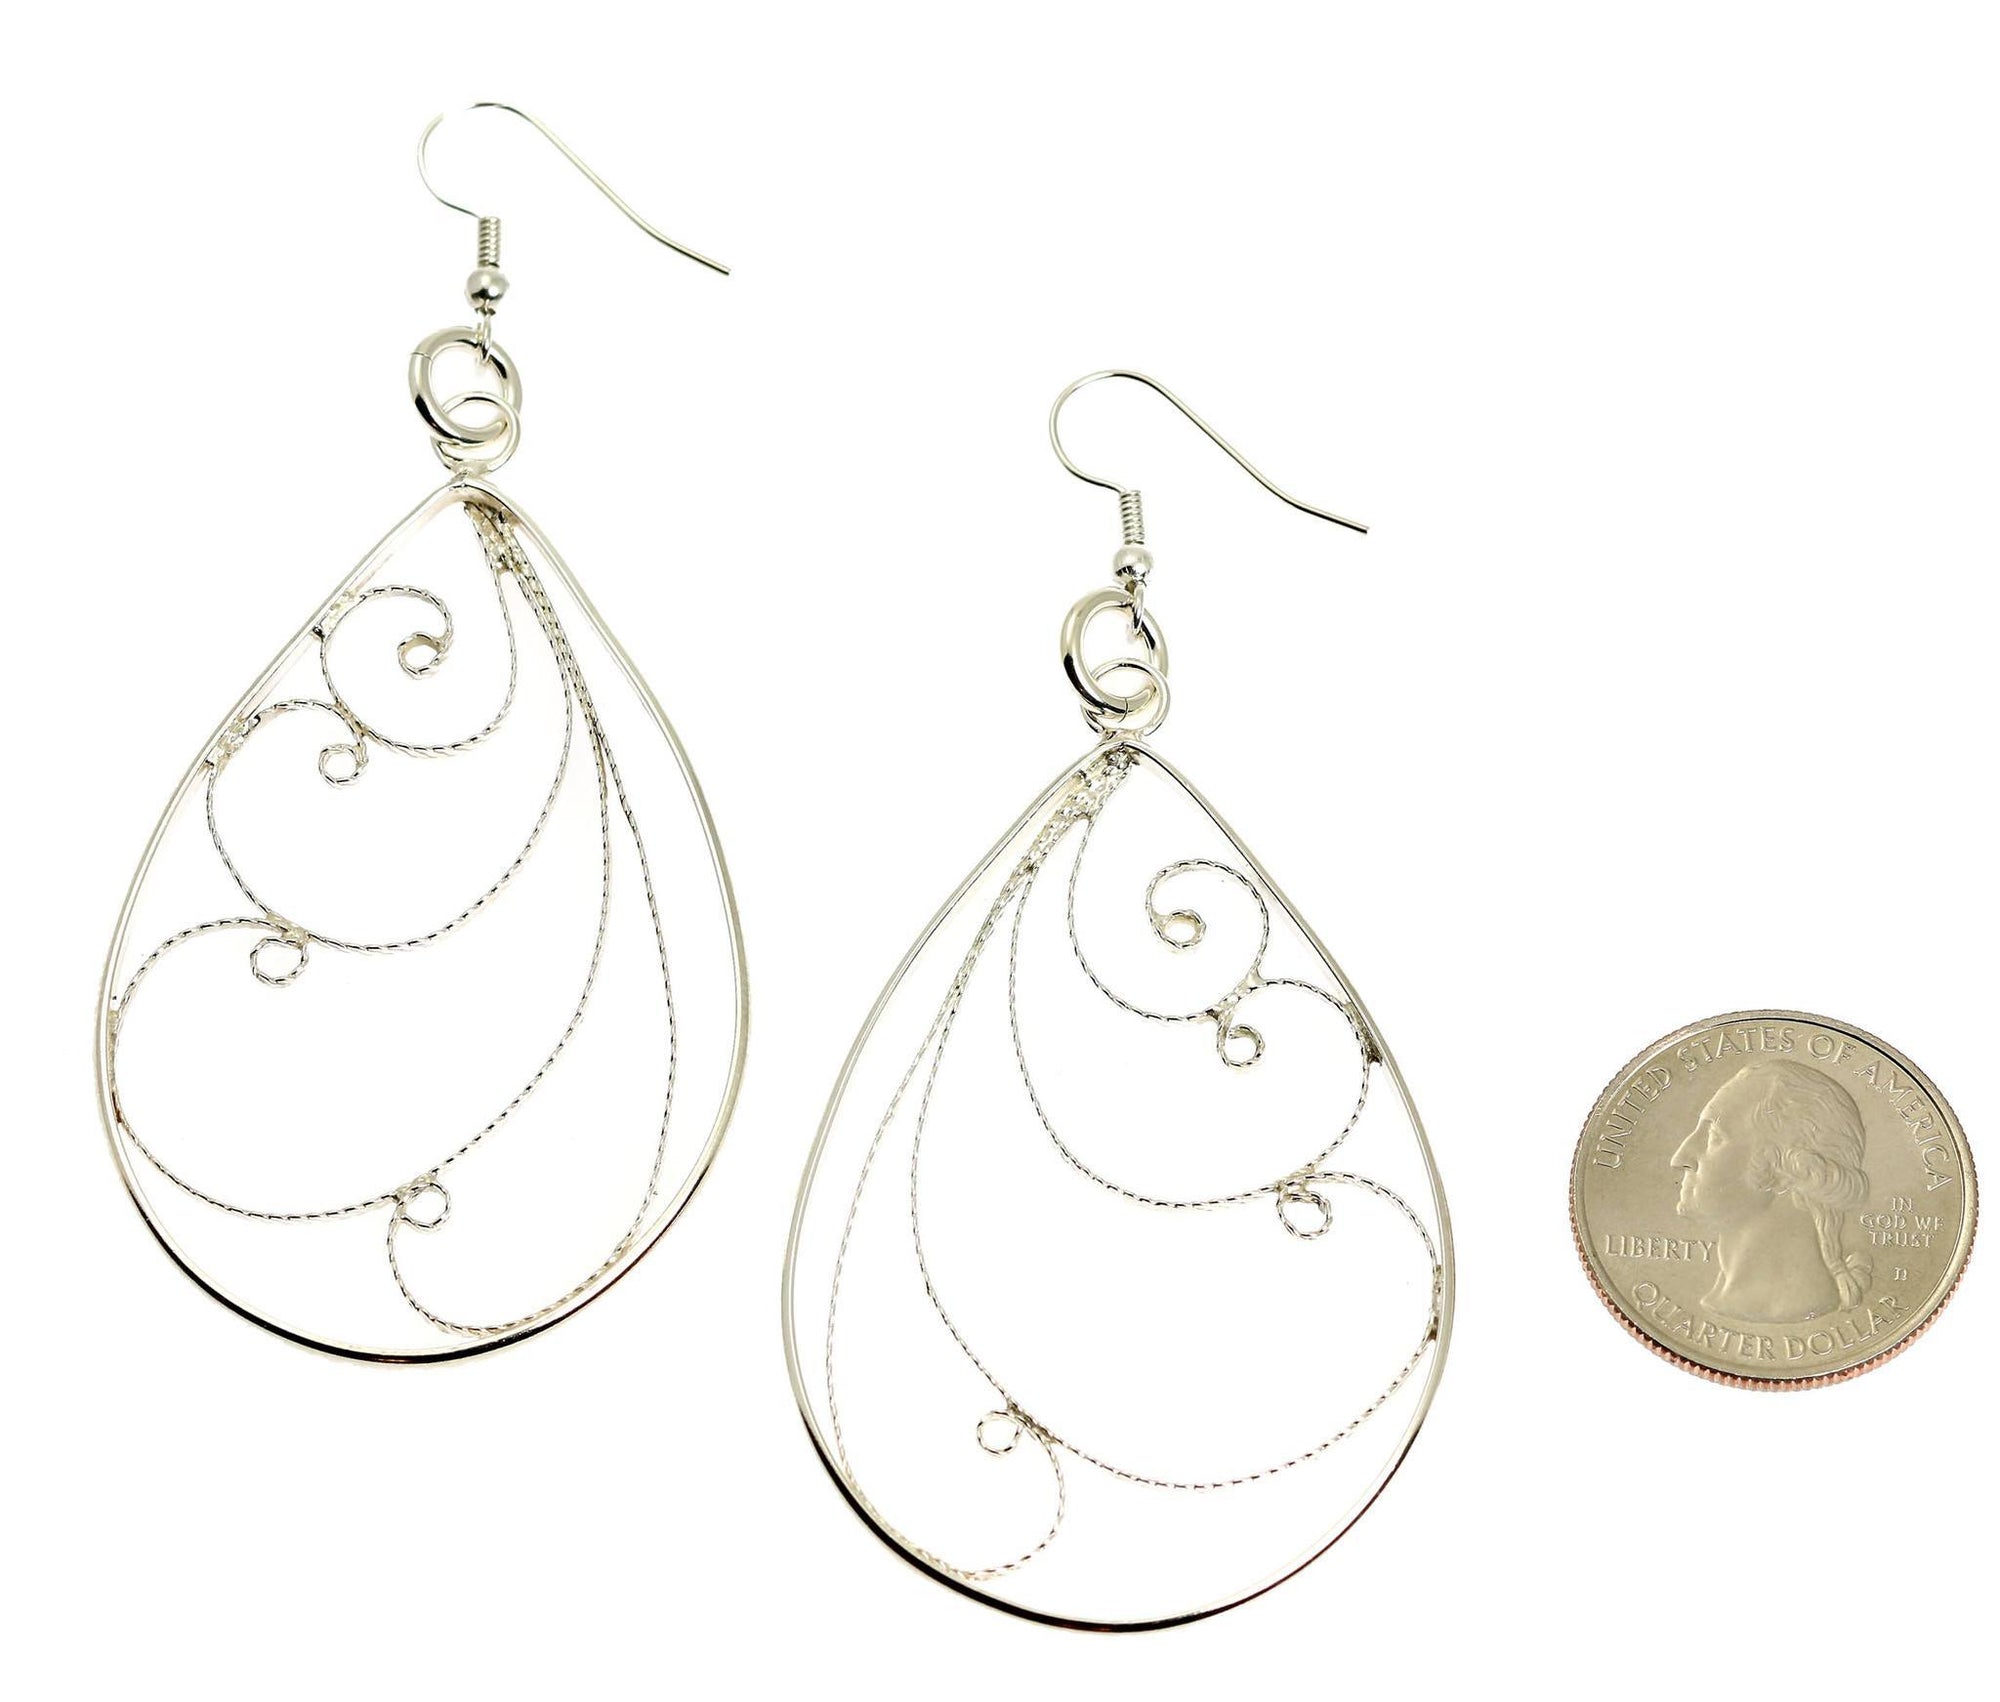 Size of Sterling Silver Filigree Scroll Earrings